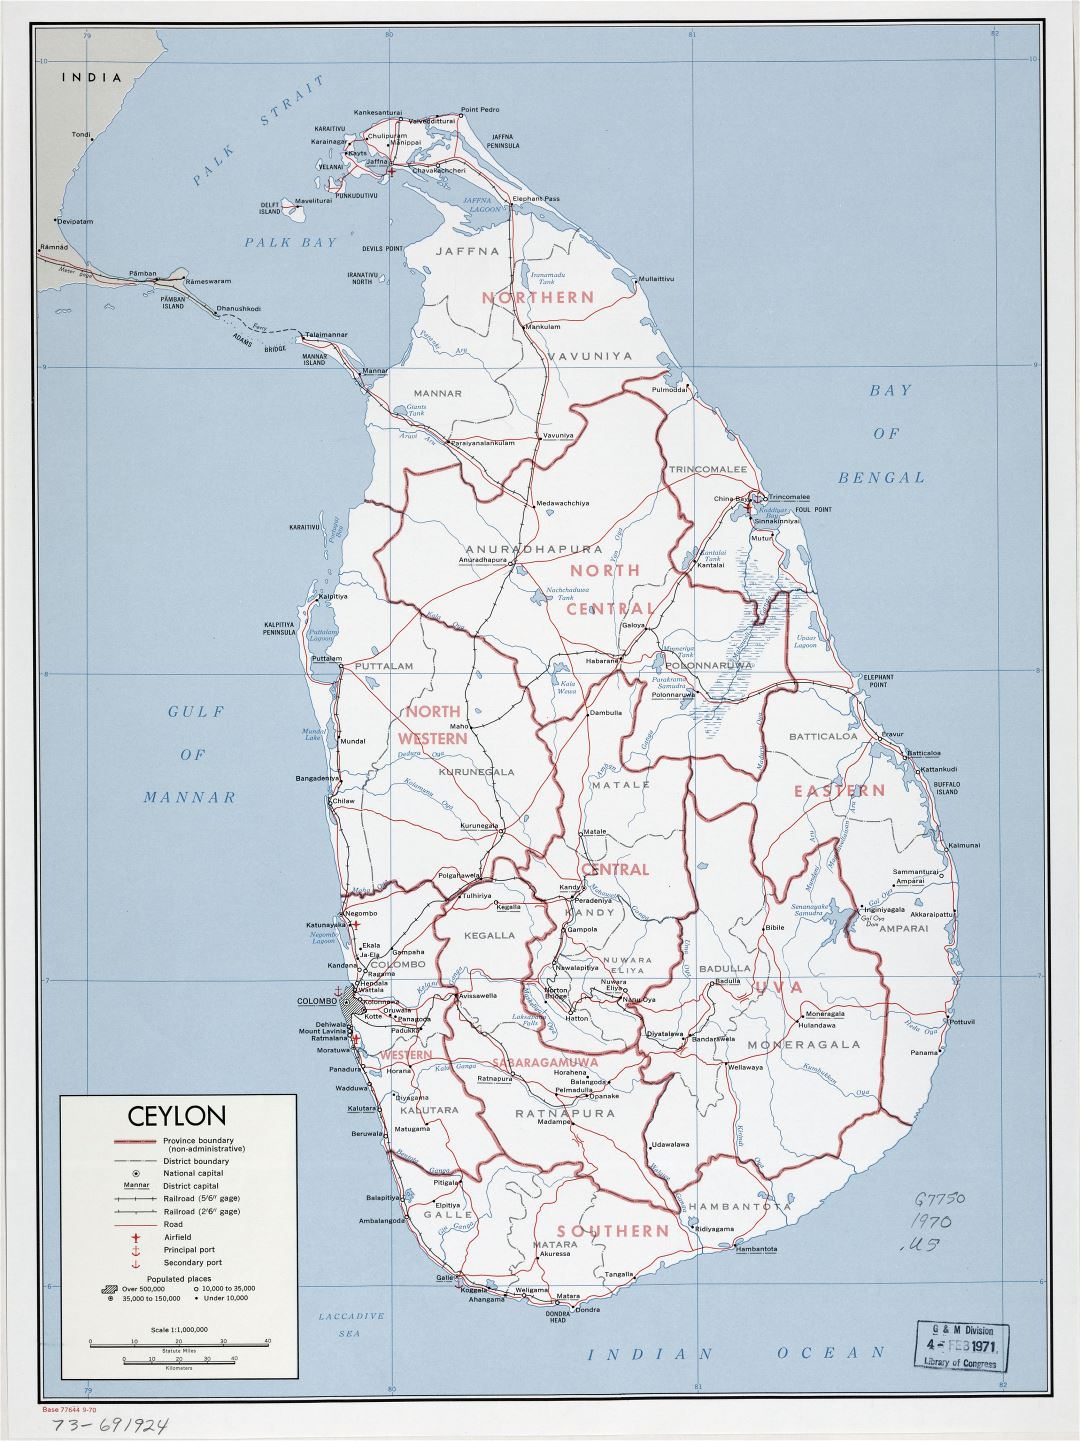 Grande Detallado Mapa Pol Tico Y Administrativo De Sri Lanka Ceil N